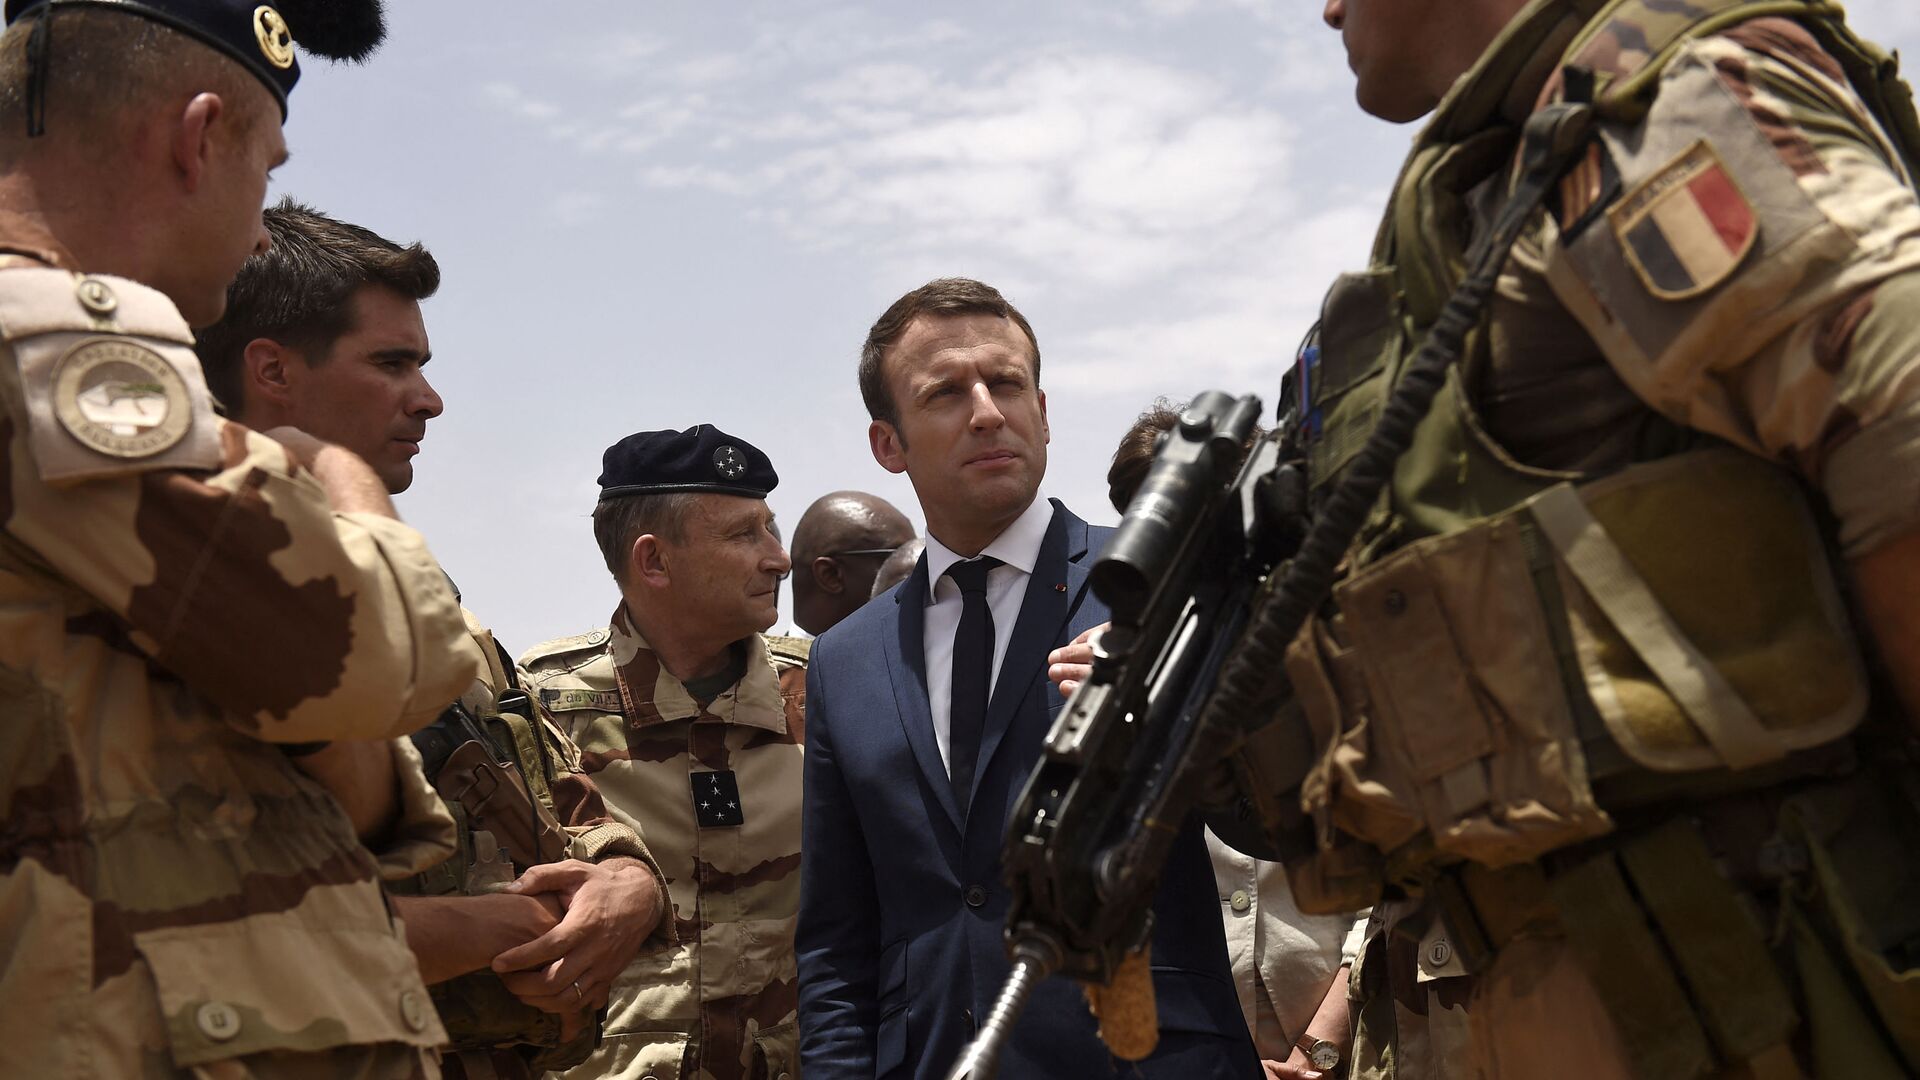 Le Président Emmanuel Macron rend visite aux hommes de l’opération Barkhane à Gao, 19 mai 2017 - Sputnik Afrique, 1920, 20.03.2021